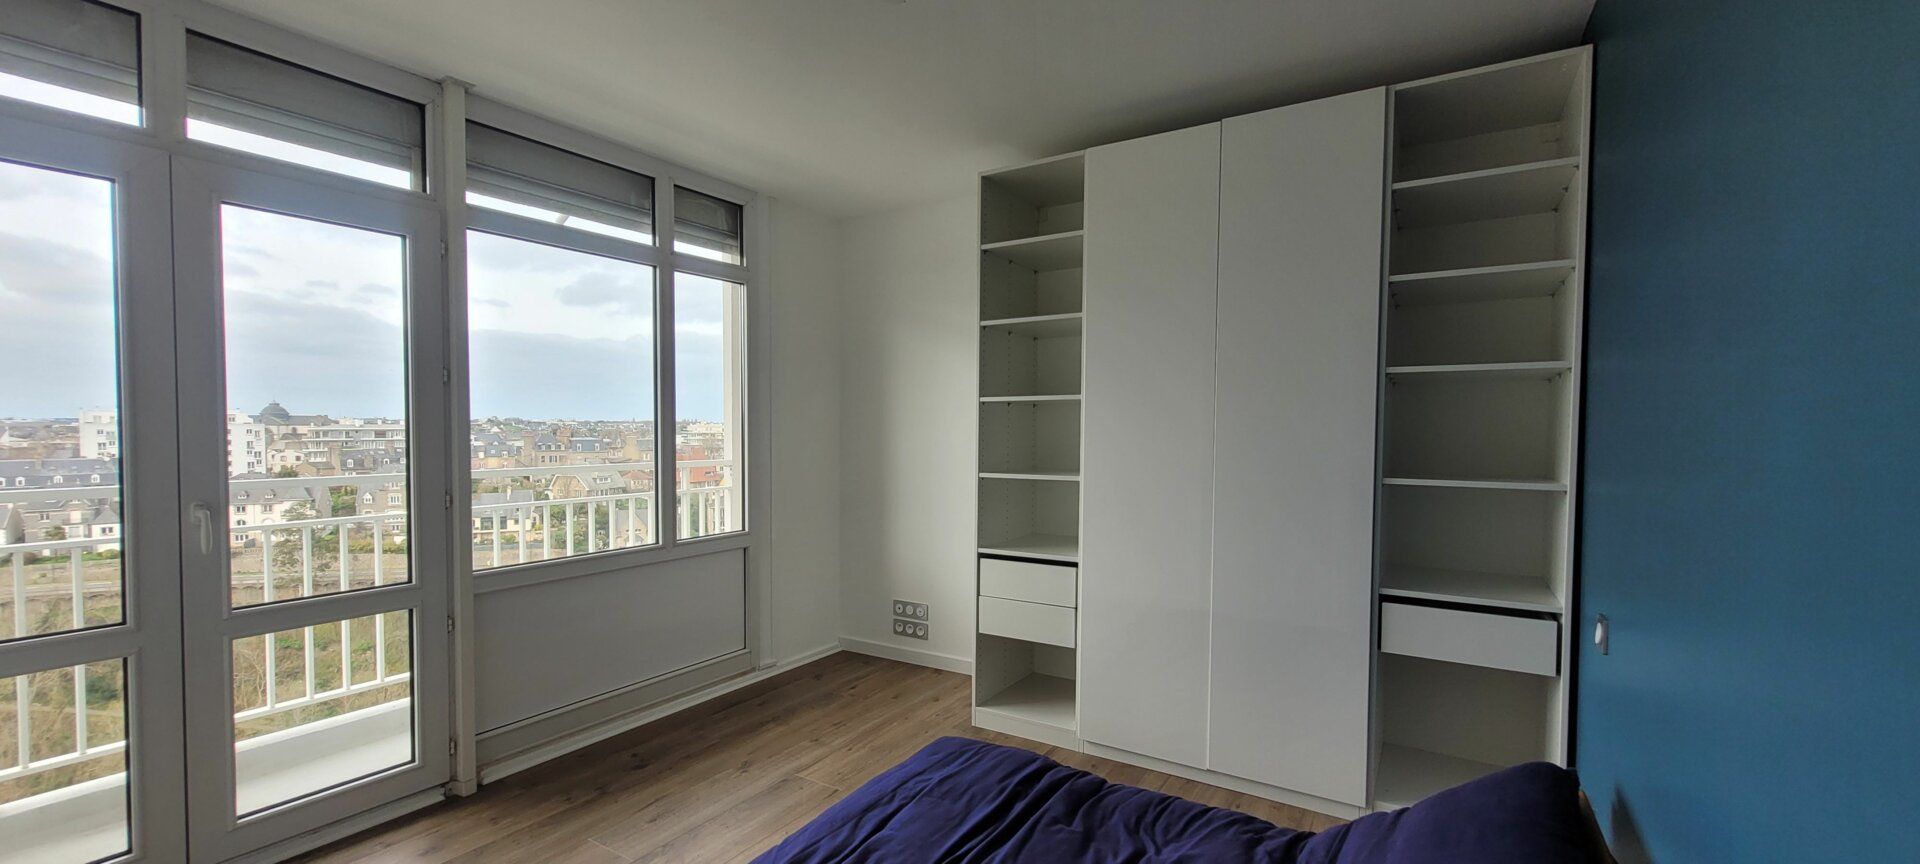 Appartement à vendre 3 72.15m2 à Saint-Brieuc vignette-14